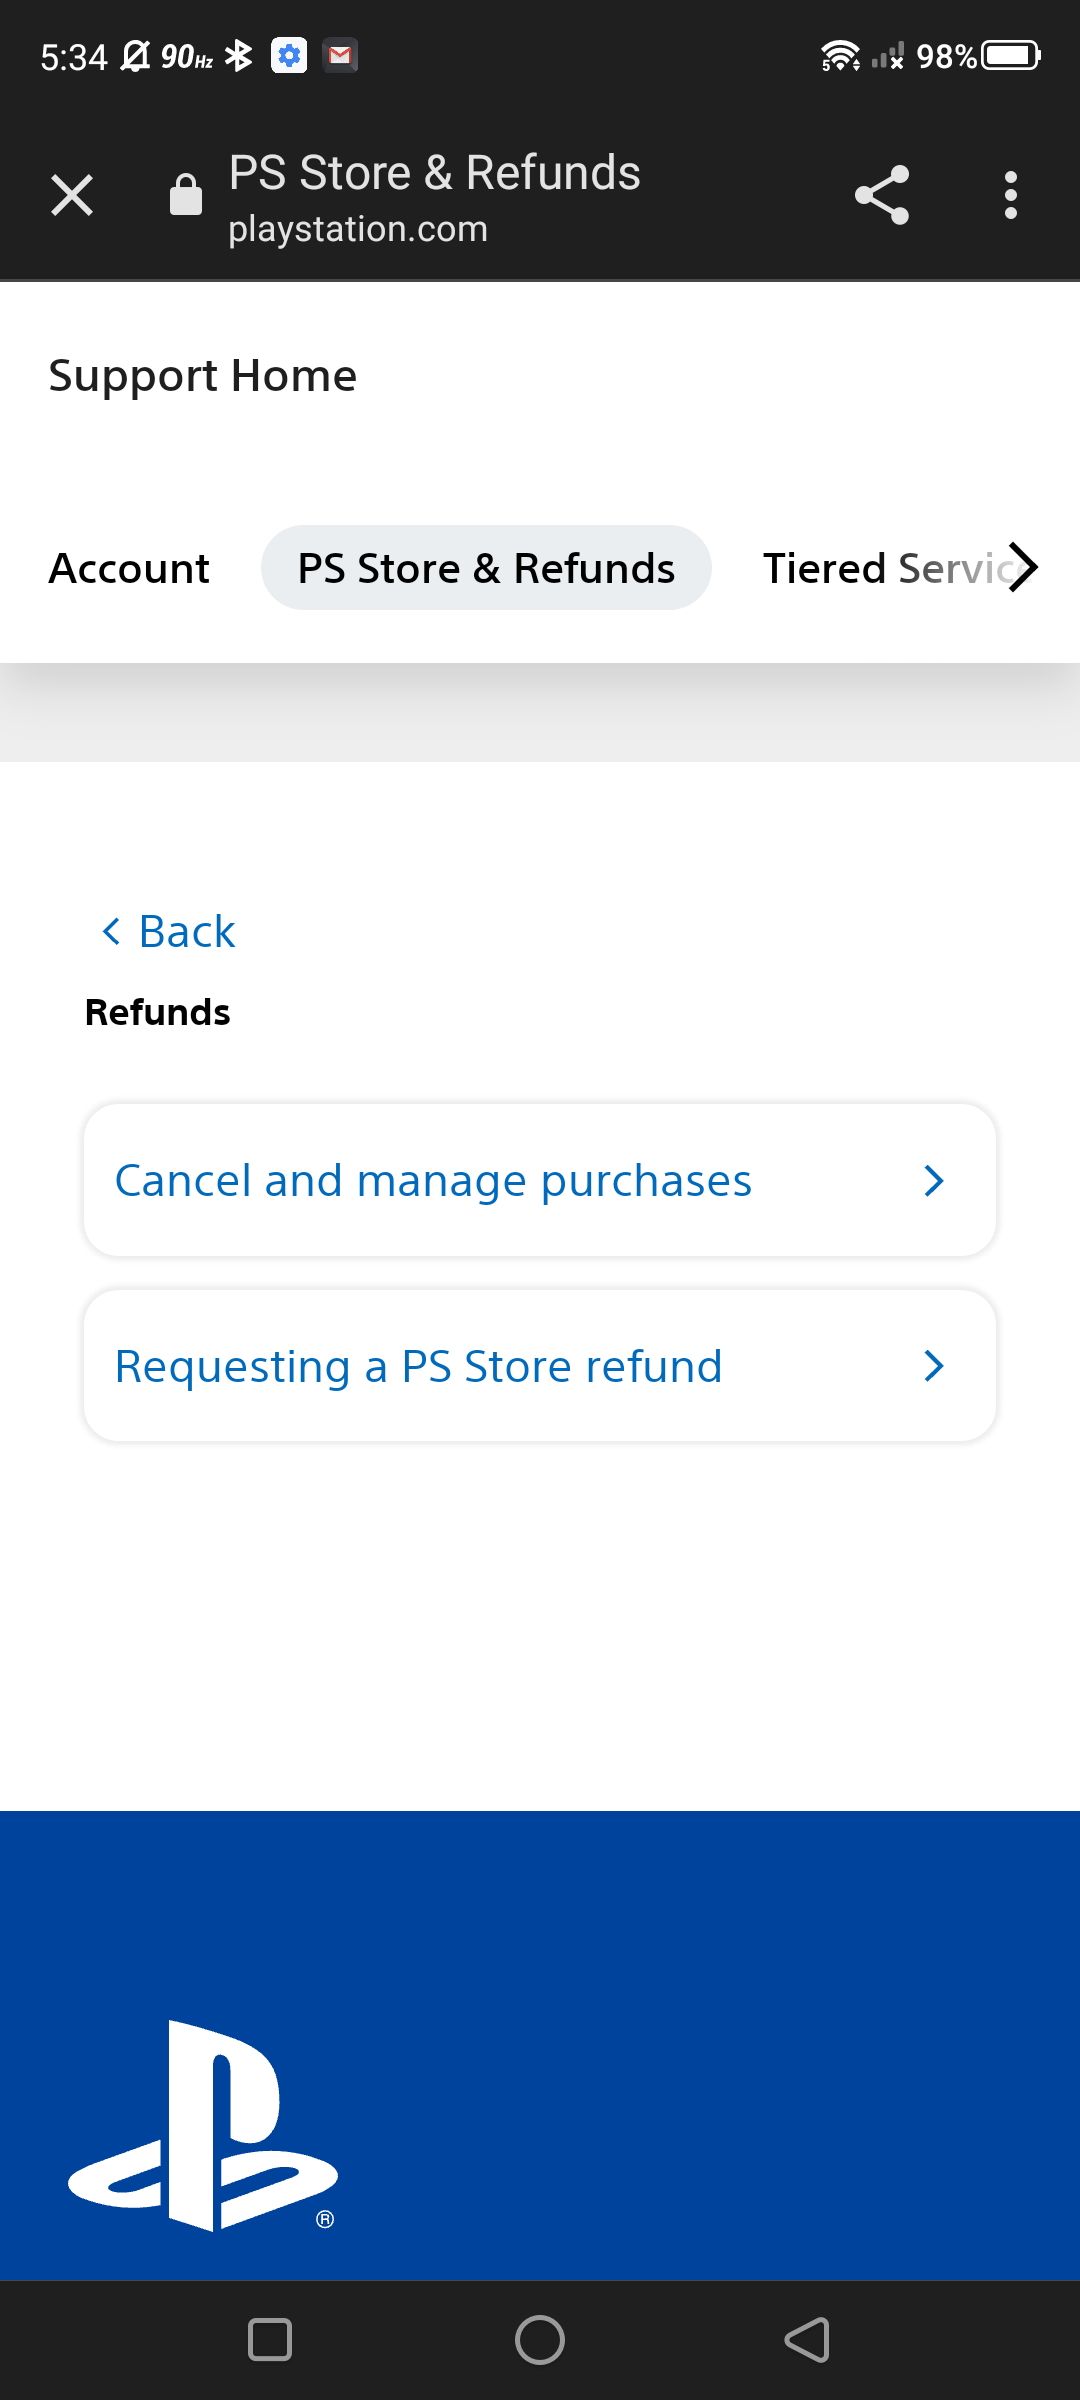 Cuplikan layar aplikasi PlayStation menavigasi halaman dukungan untuk pengembalian uang